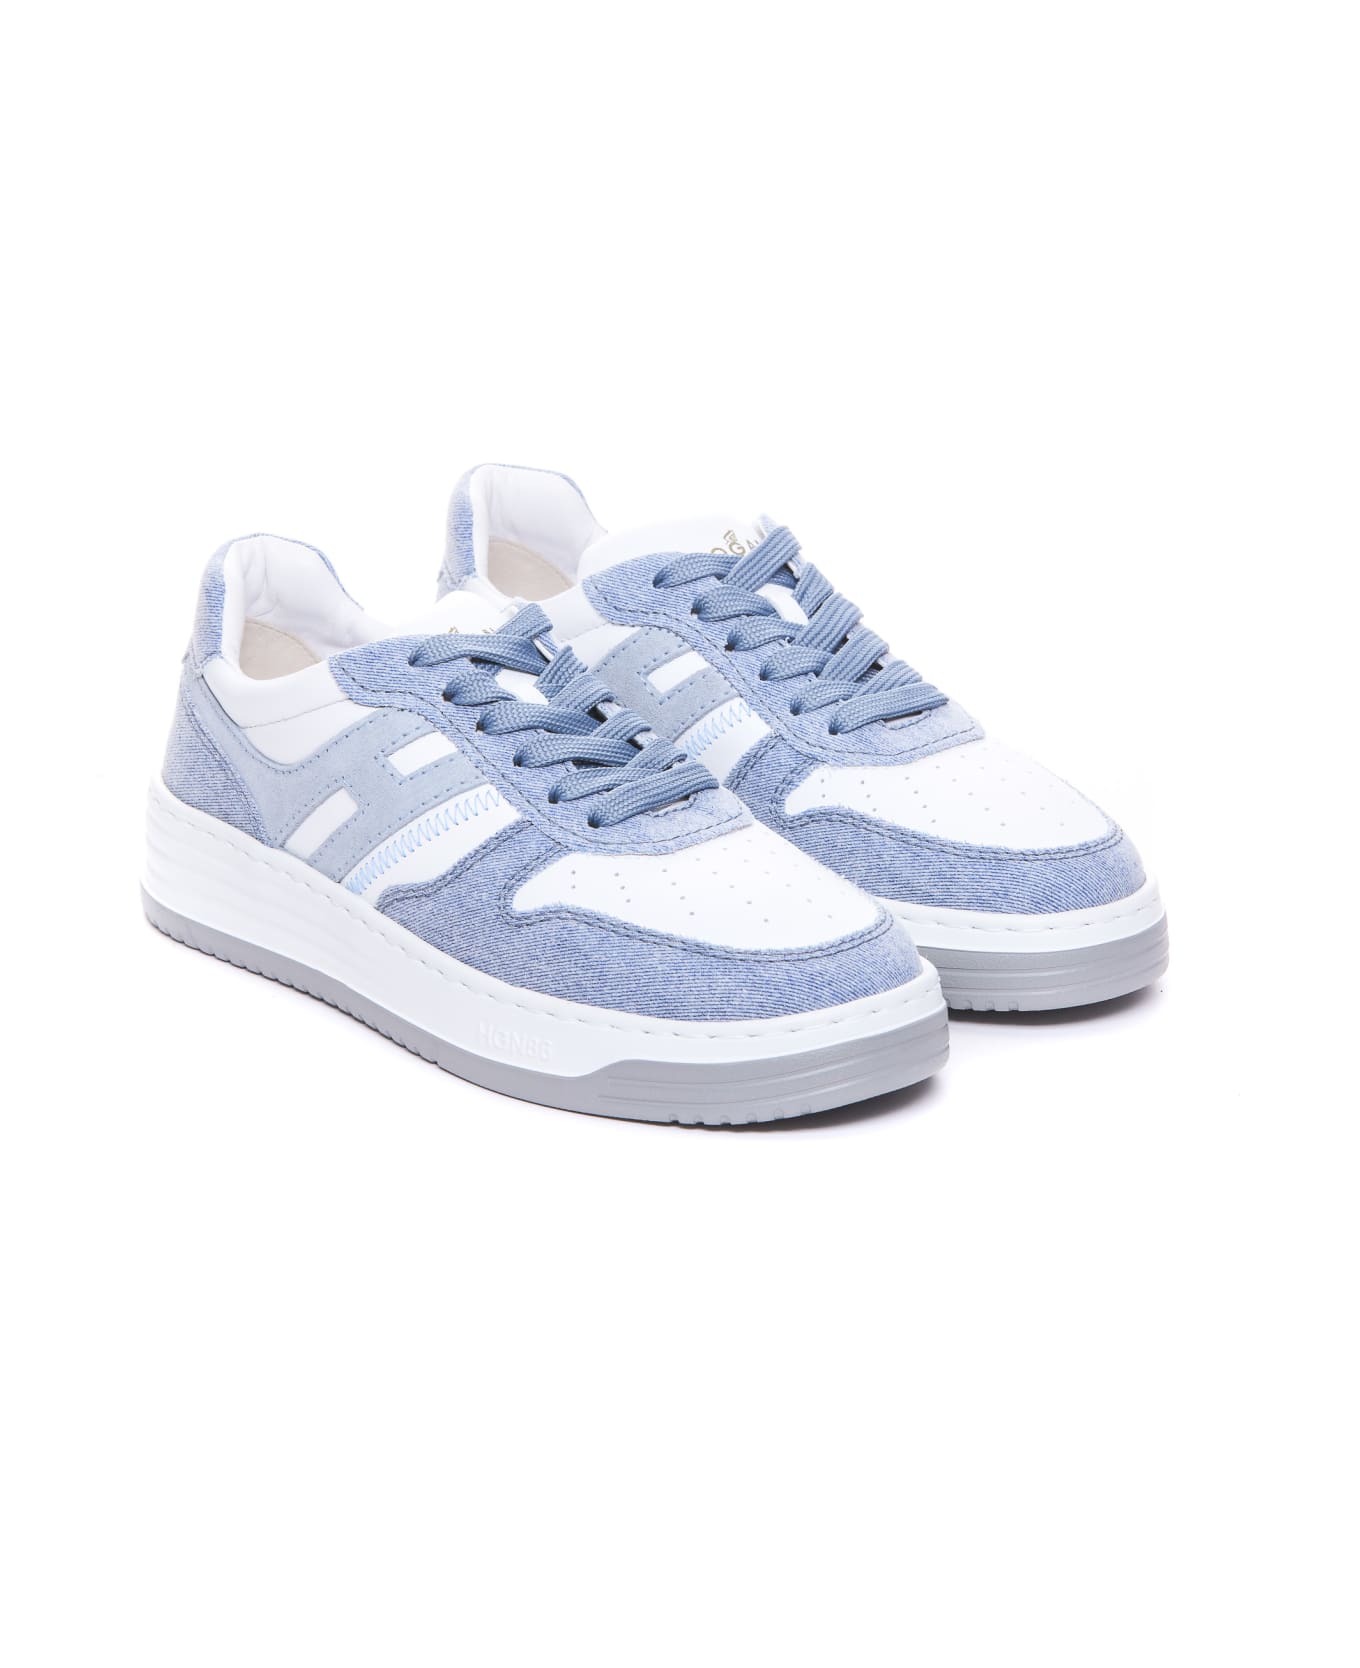 Hogan H630 Sneakers - WHITE/BLUE スニーカー